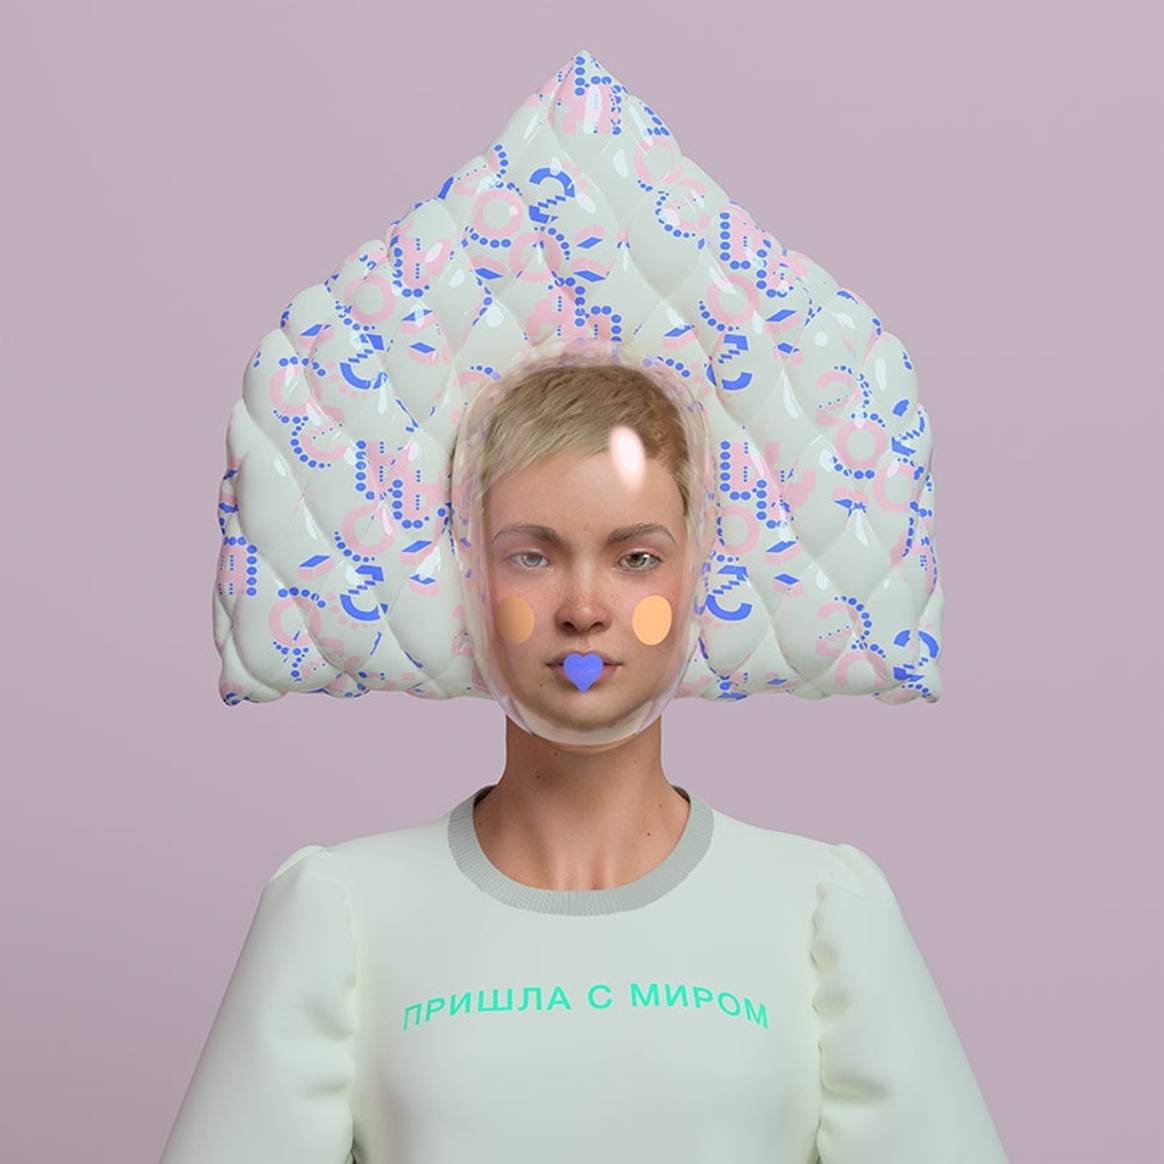 Alena Akhmadullina впервые создала виртуальную одежду